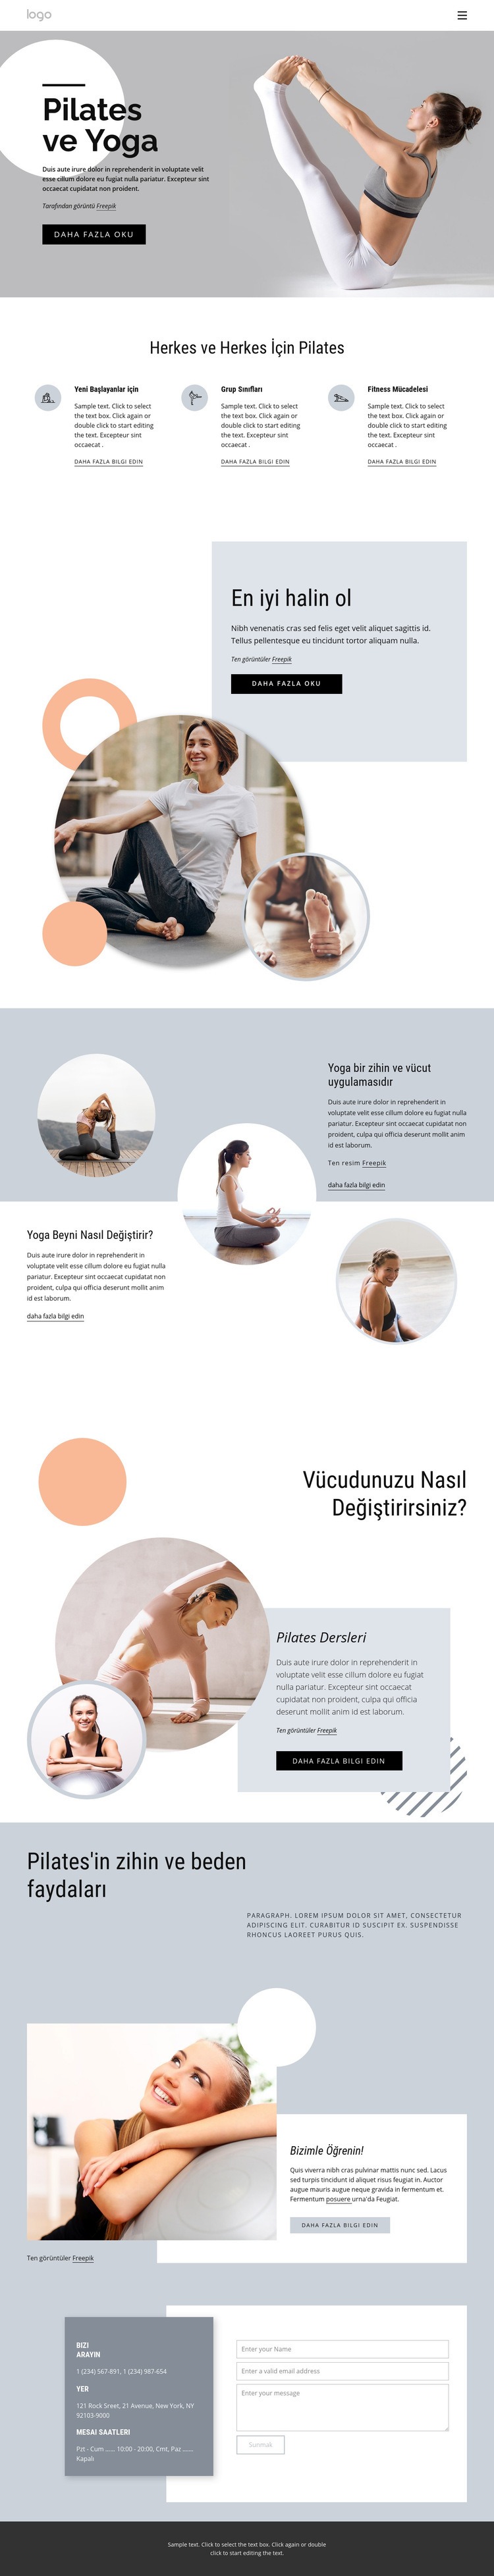 Pilates ve yoga merkezi Açılış sayfası